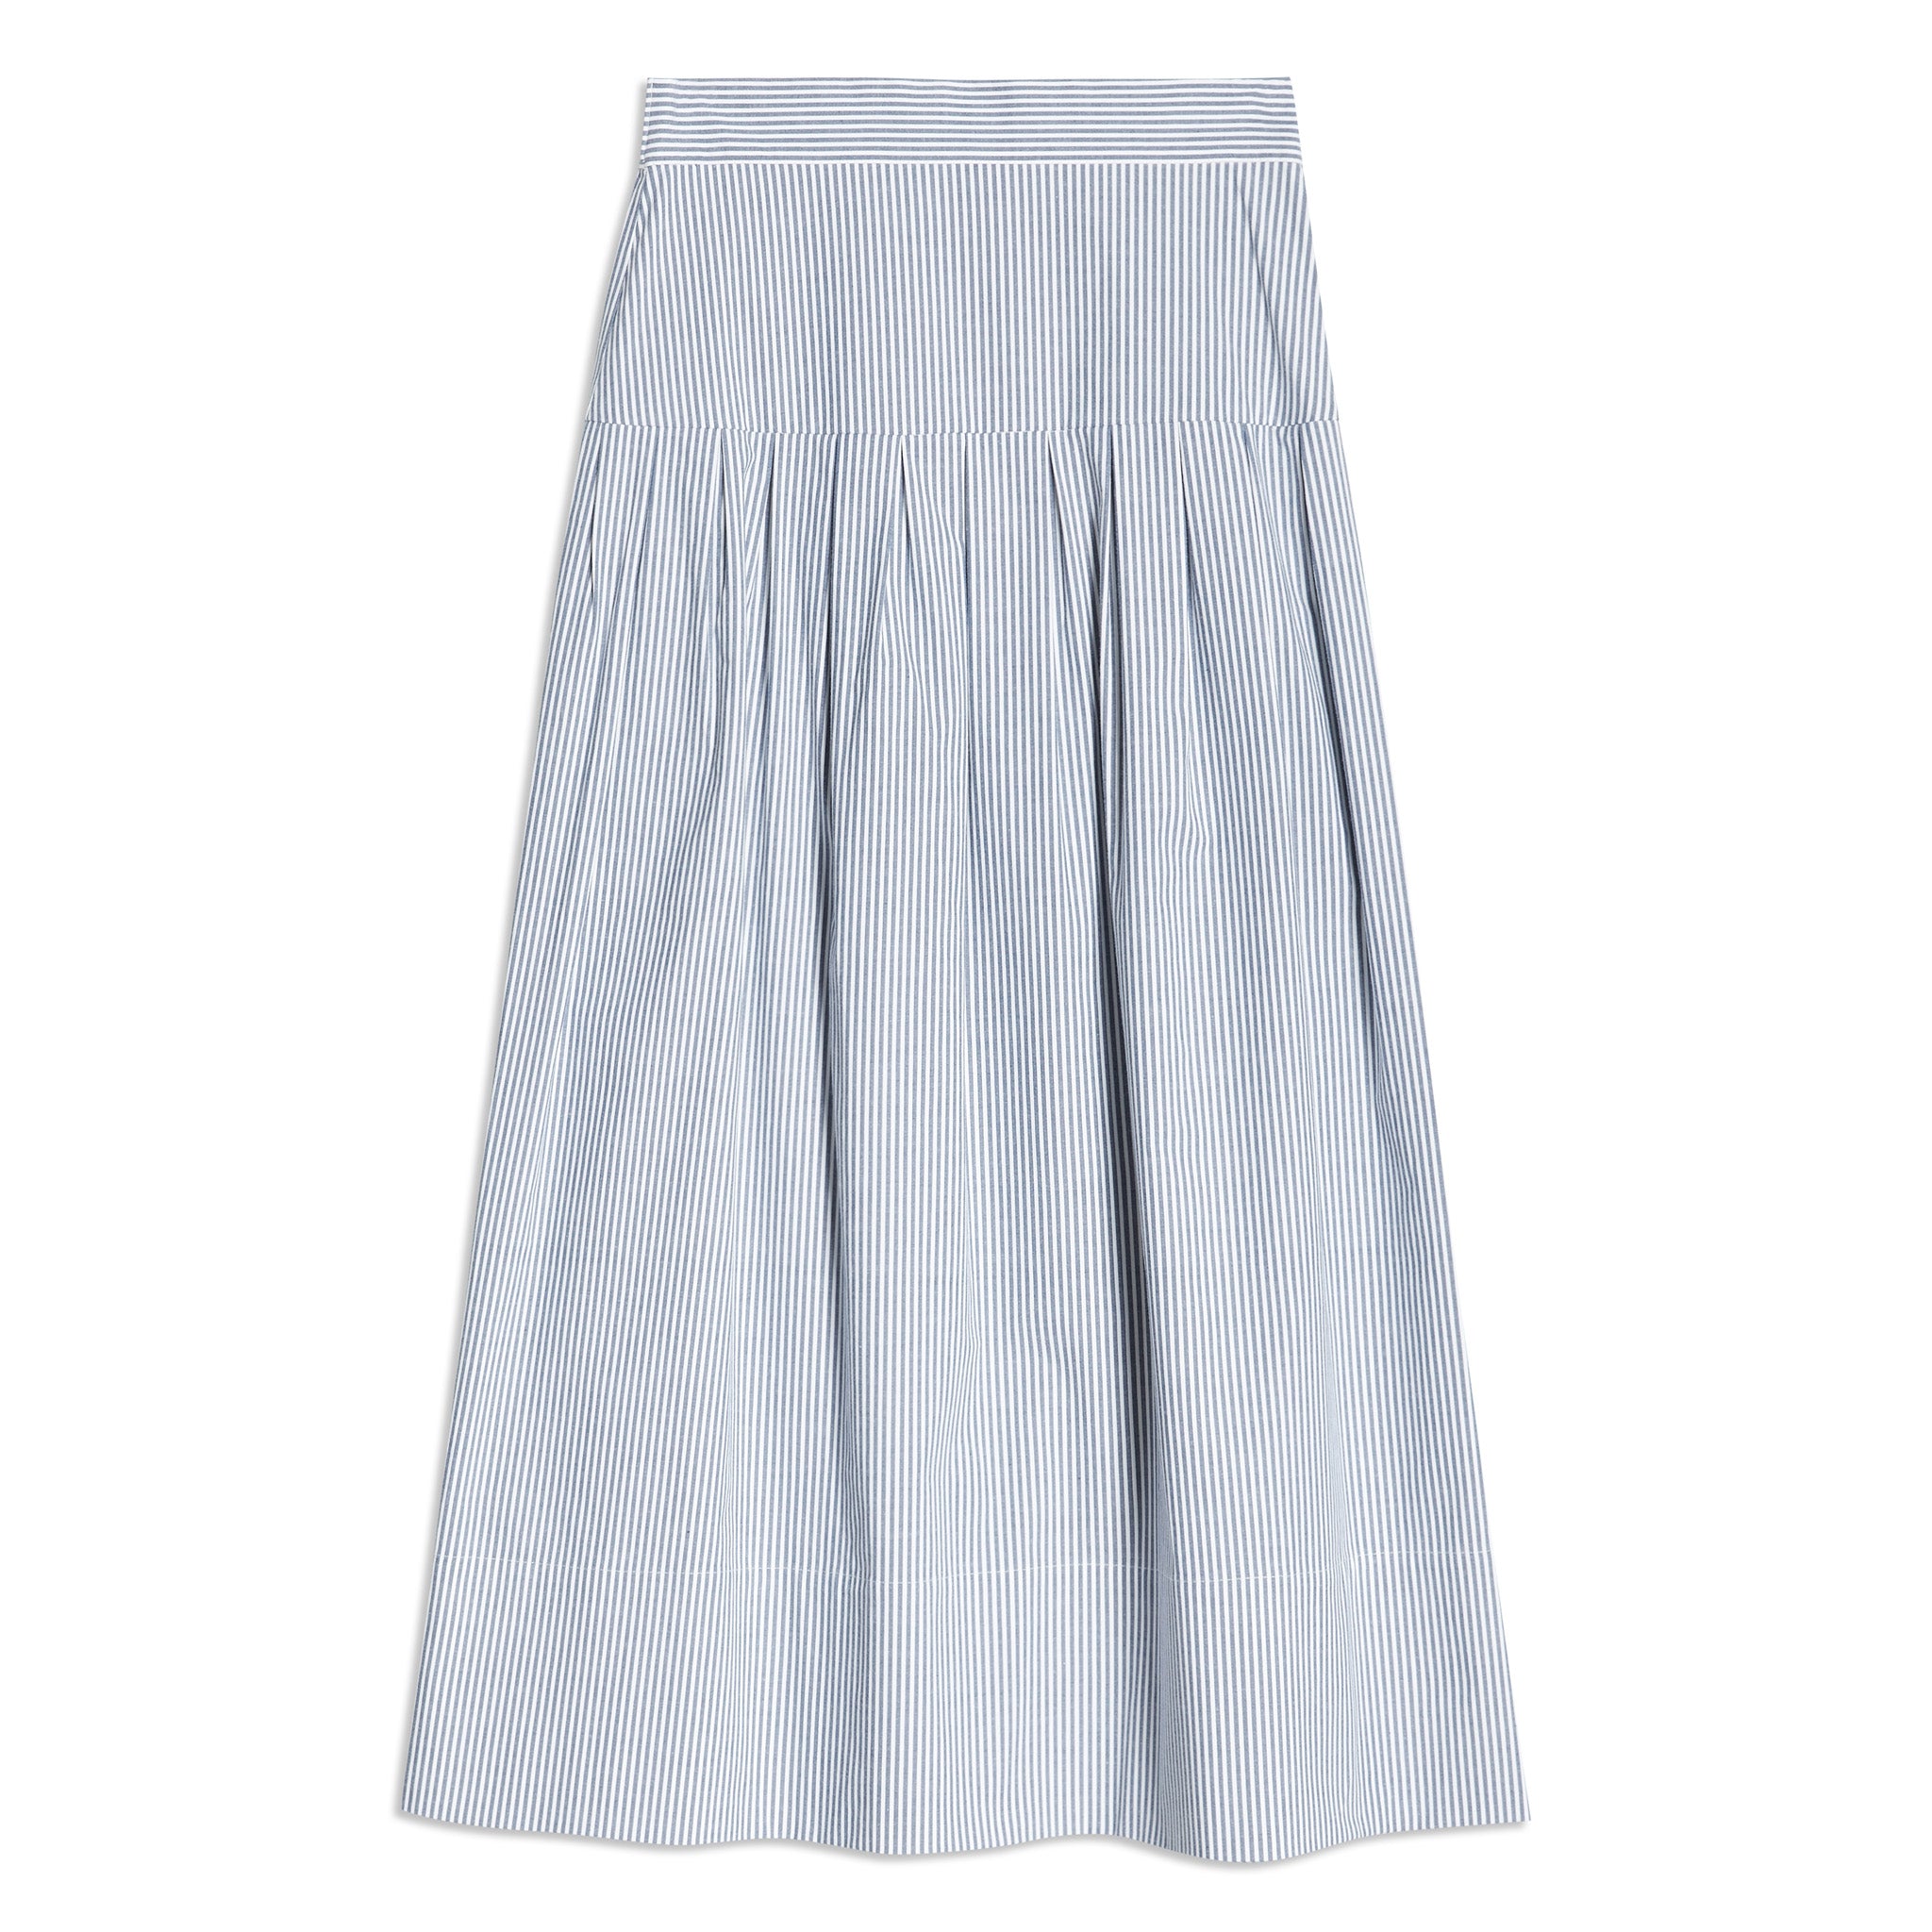 Ticking Stripe Drop Waist Skirt